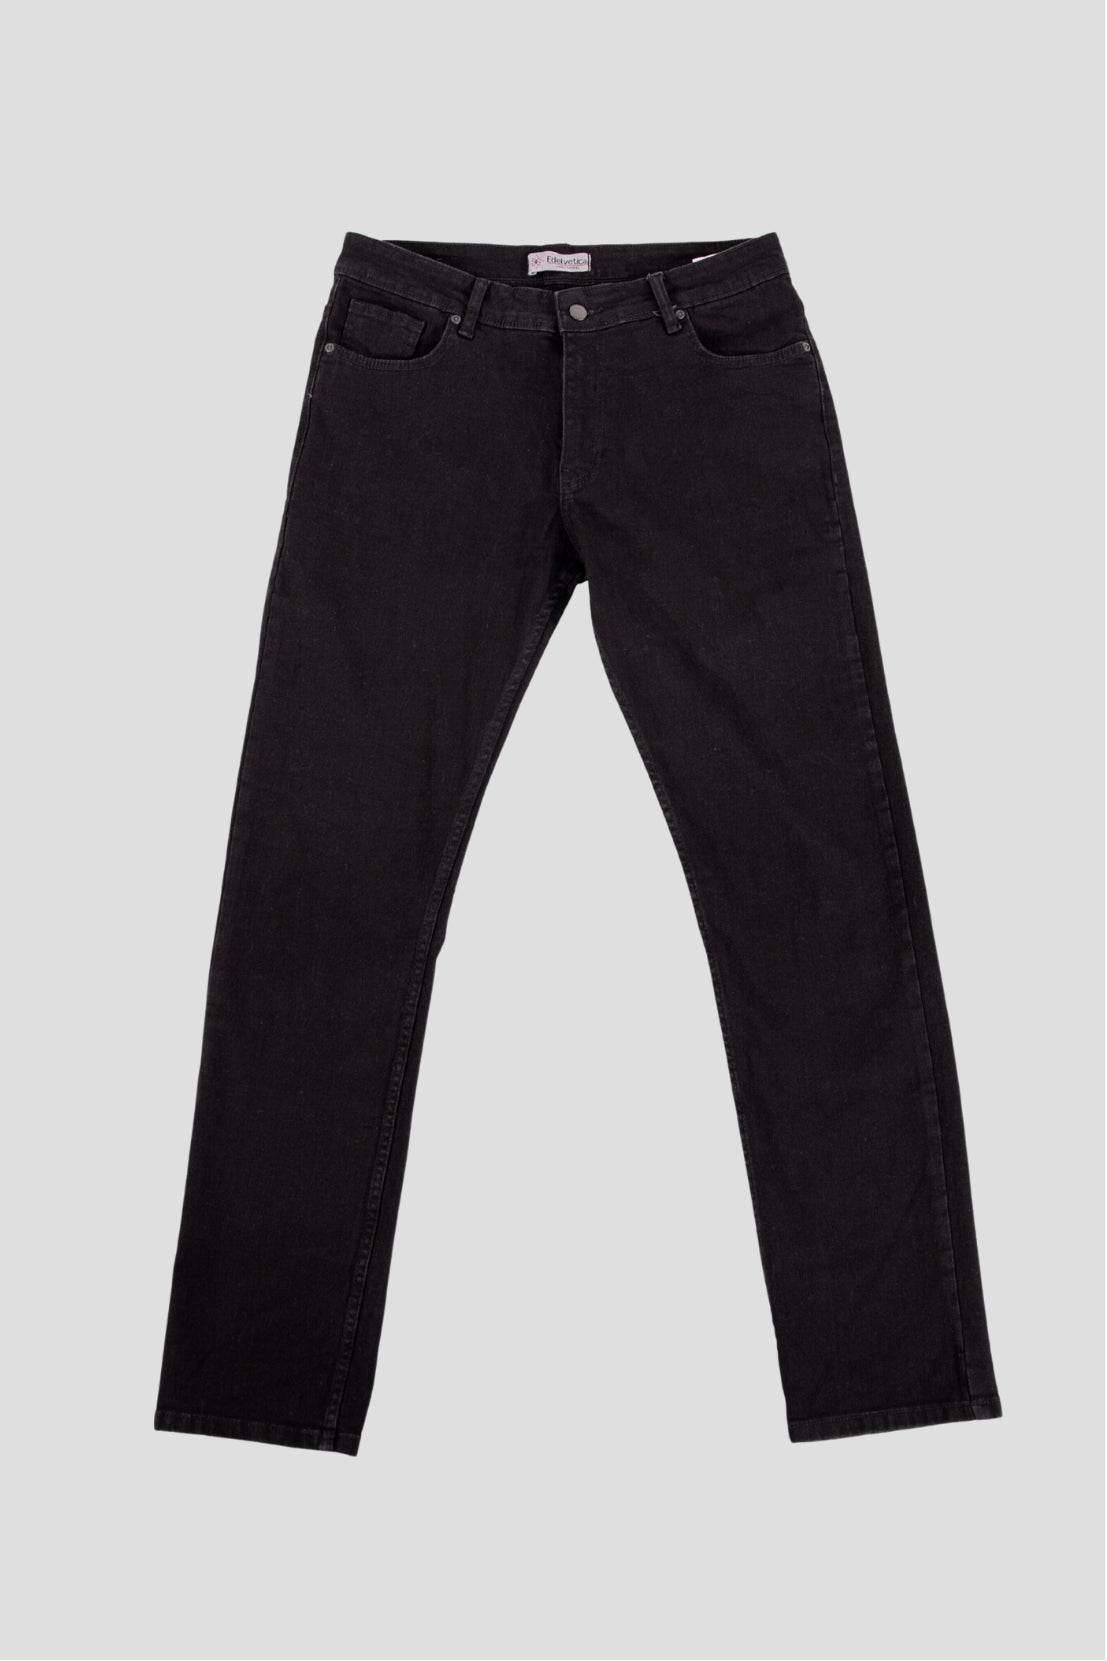 Herren Edelweiss Jeans von Edelvetica, eine modische und vielseitige Jeanshose. Charakterisiert durch einzigartige Edelweiss-Stickereien, die der Jeans eine besondere Note verleihen. Perfekt für einen lässig-eleganten Look, der Tradition und modernen Stil vereint.